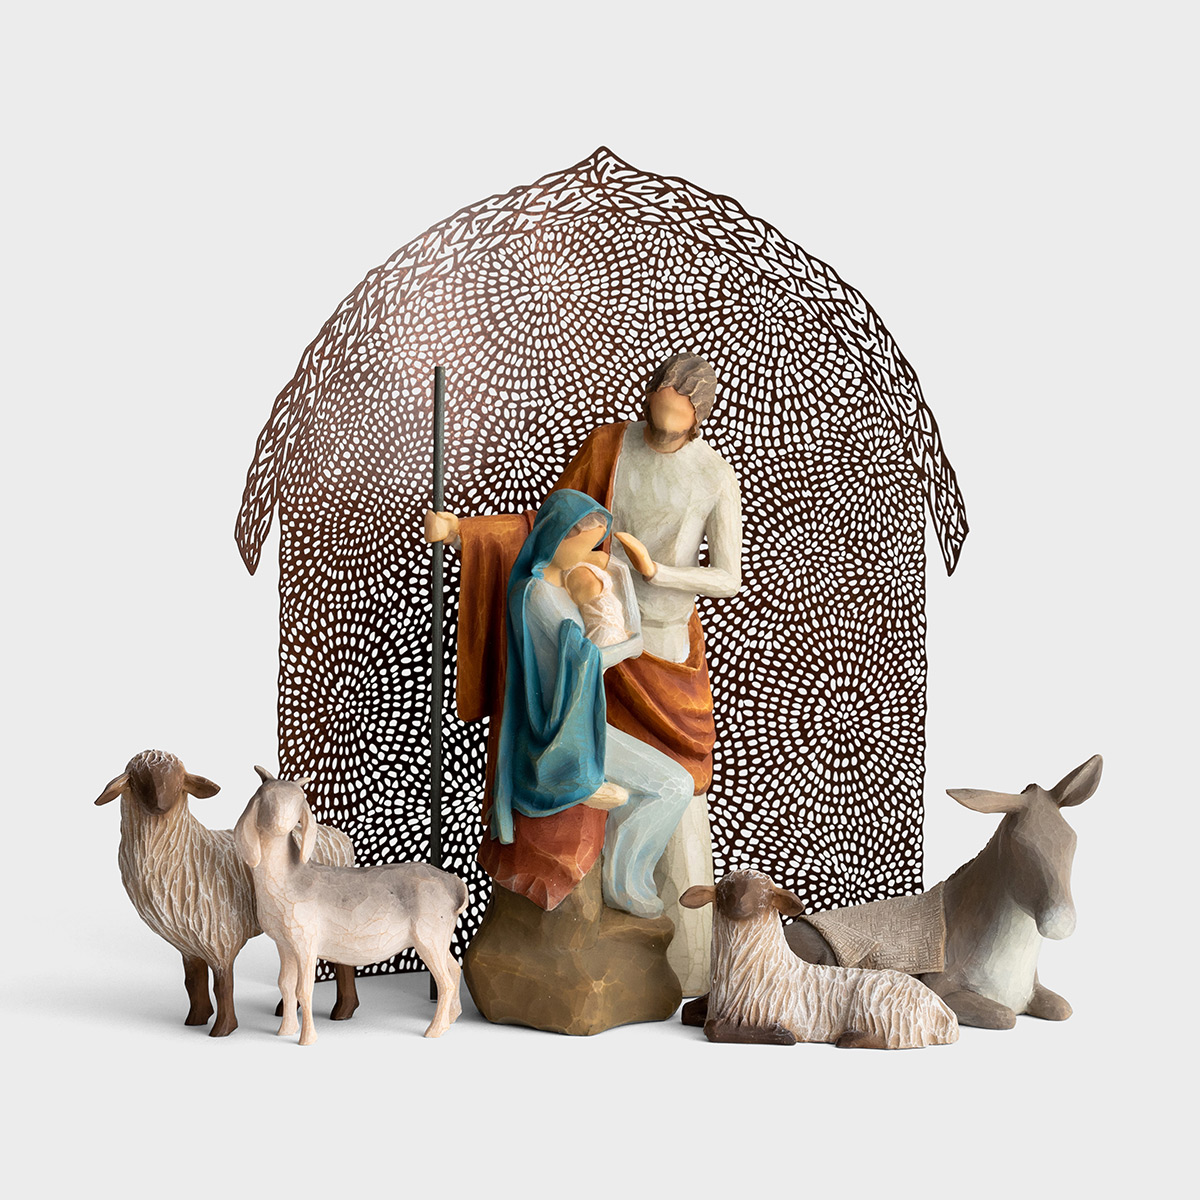 The Holy Family - Willow Tree Nativity Set